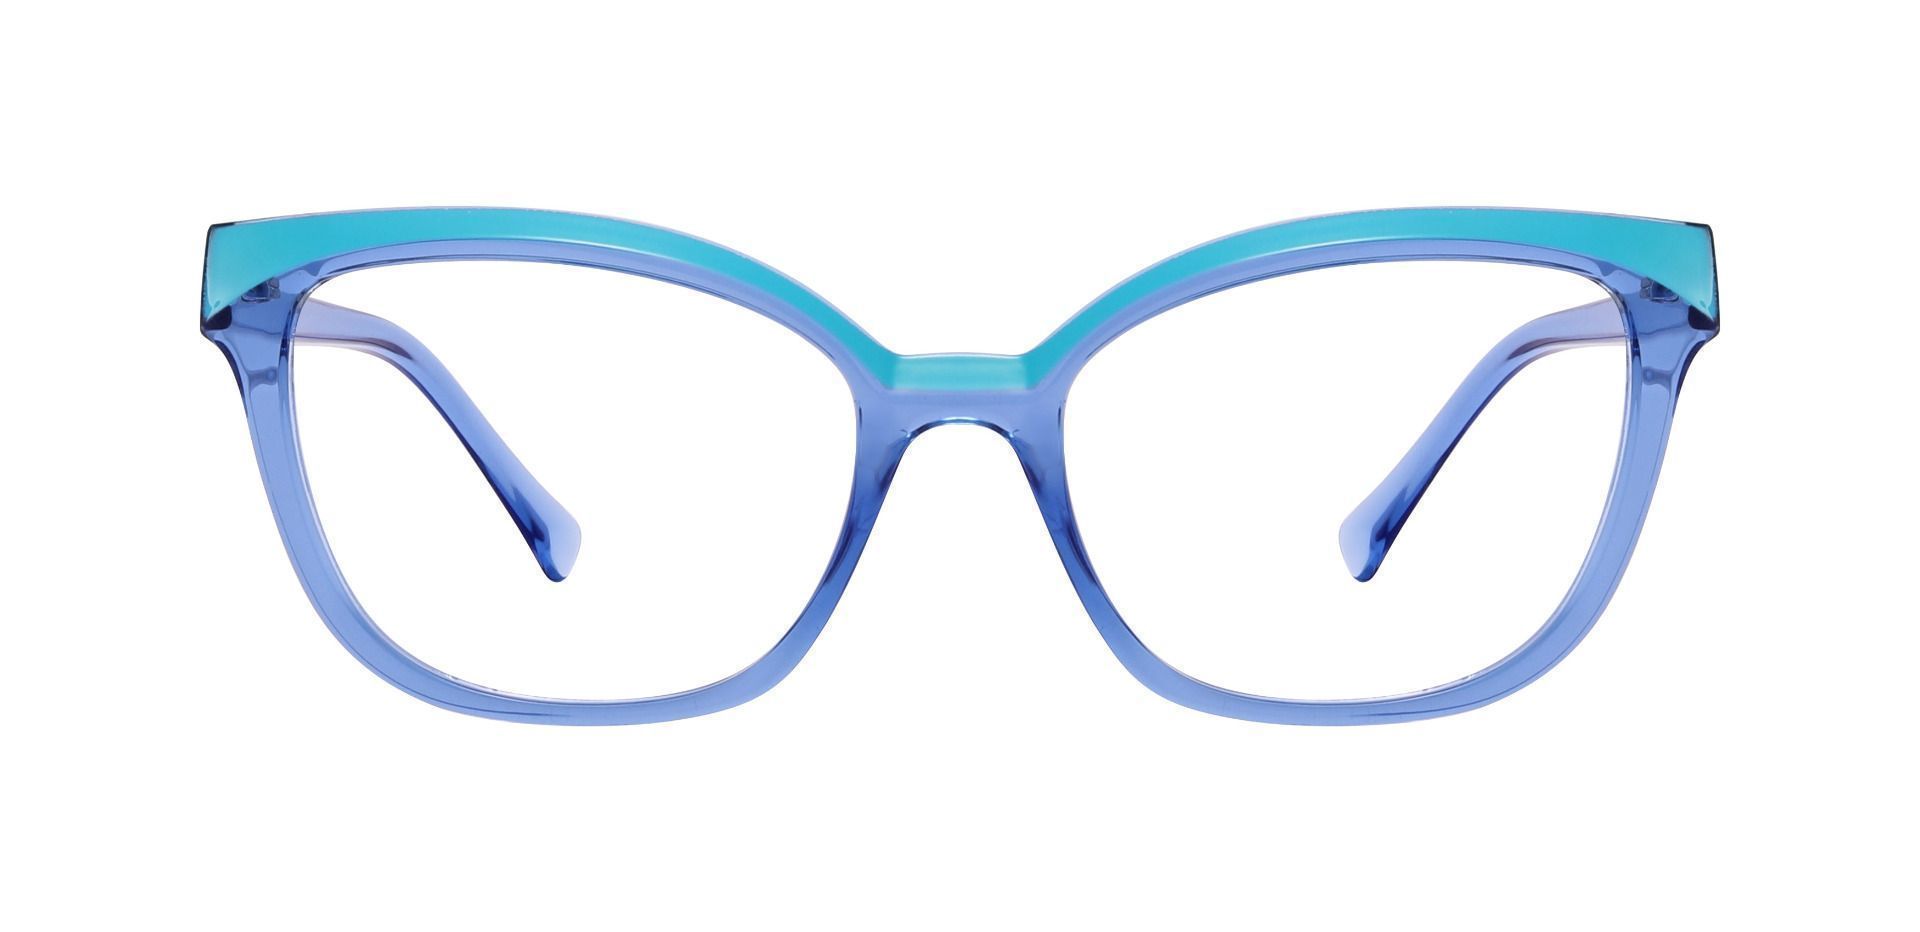 Nashville Cat Eye Prescription Glasses - Blue